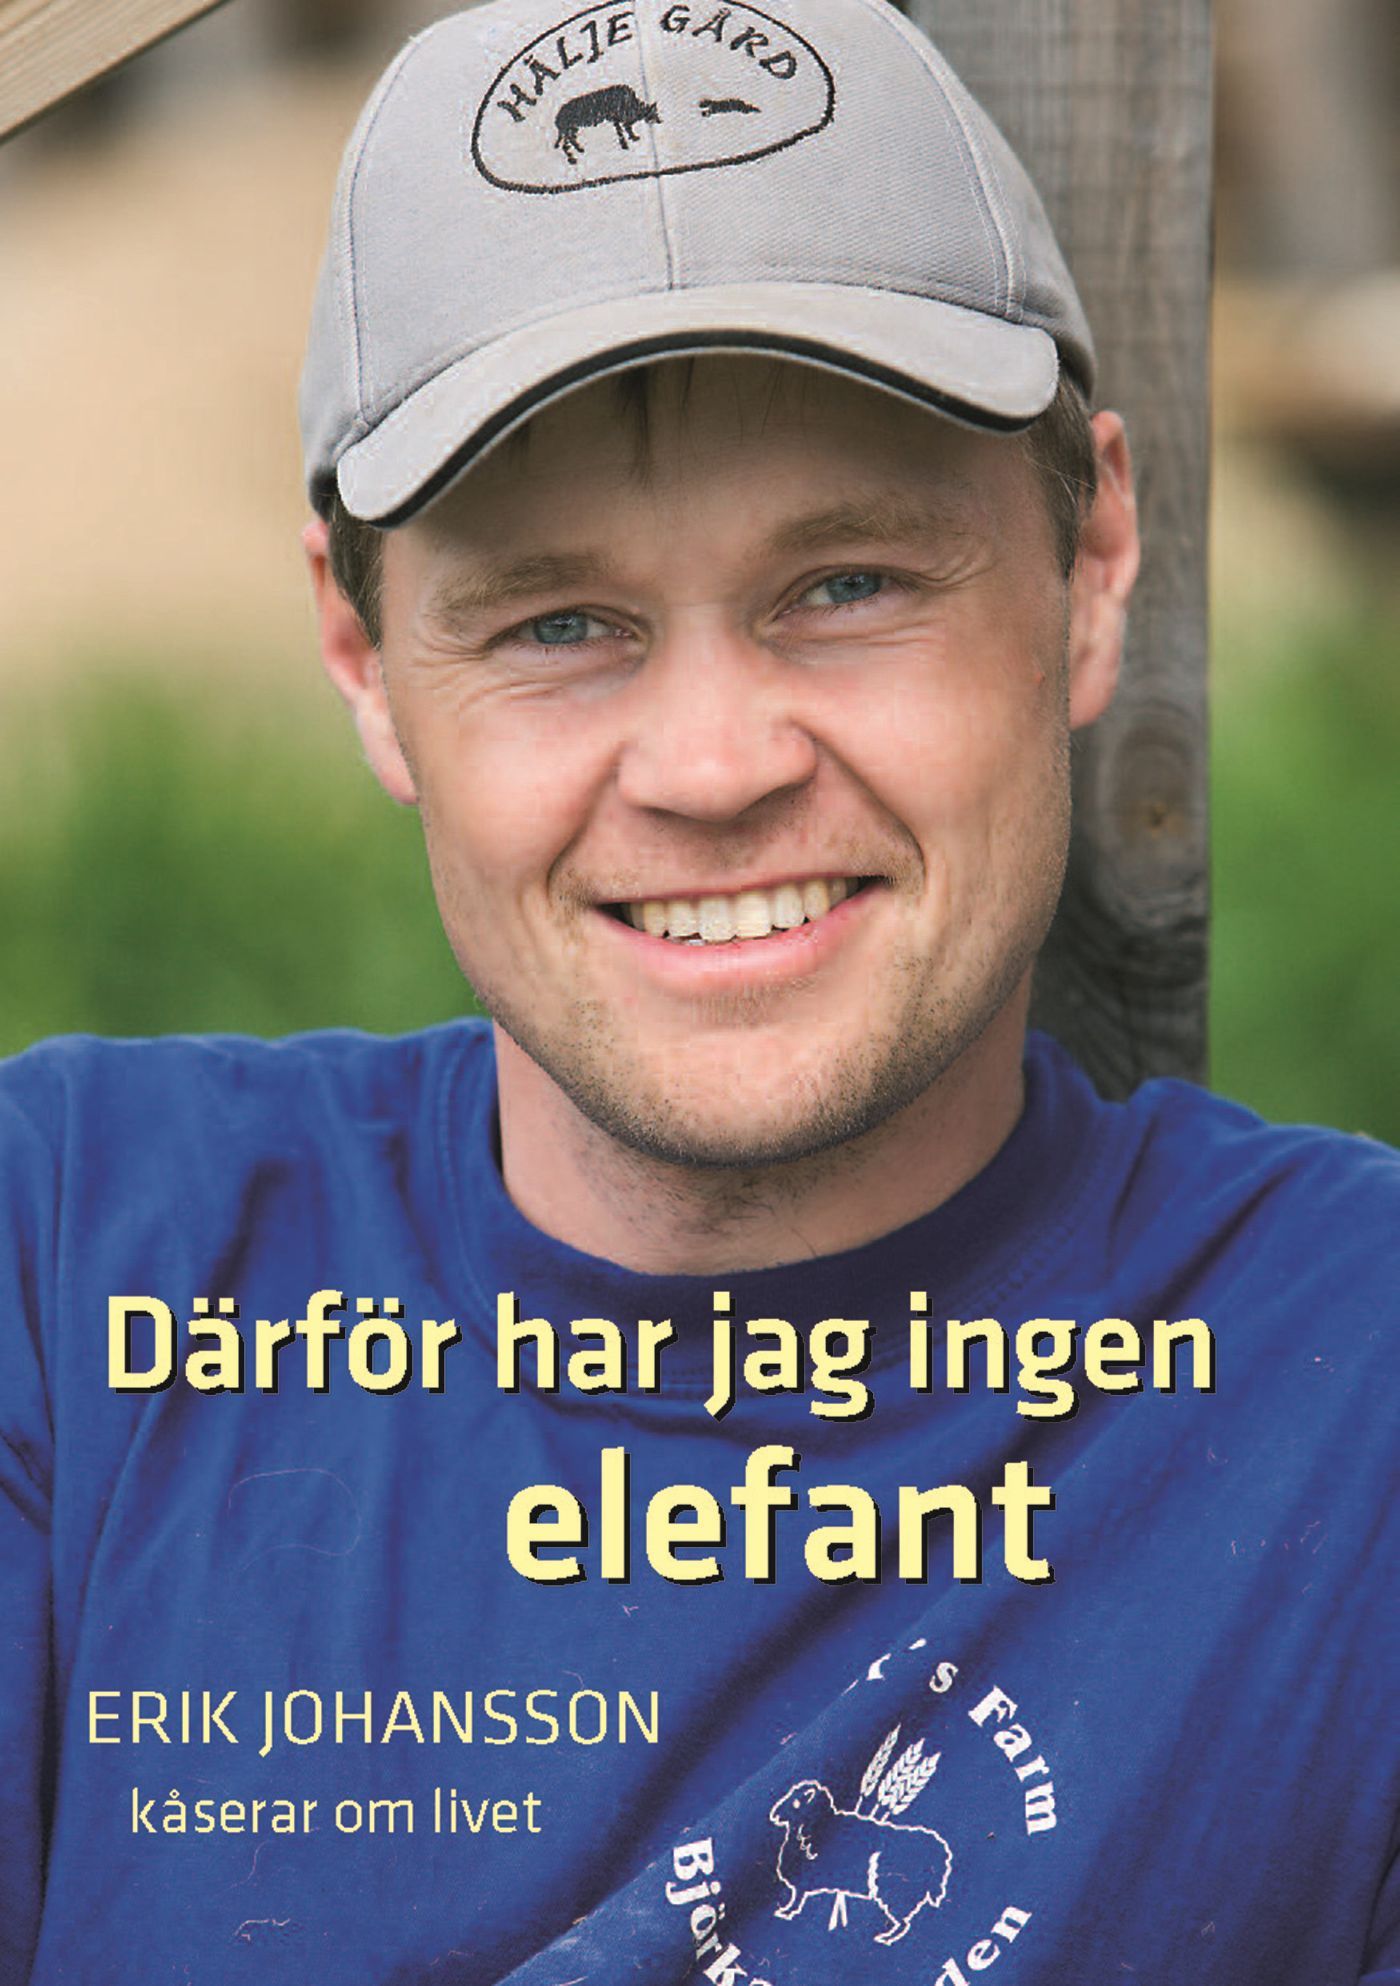 Därför har jag ingen elefant, e-bok av Erik Johansson